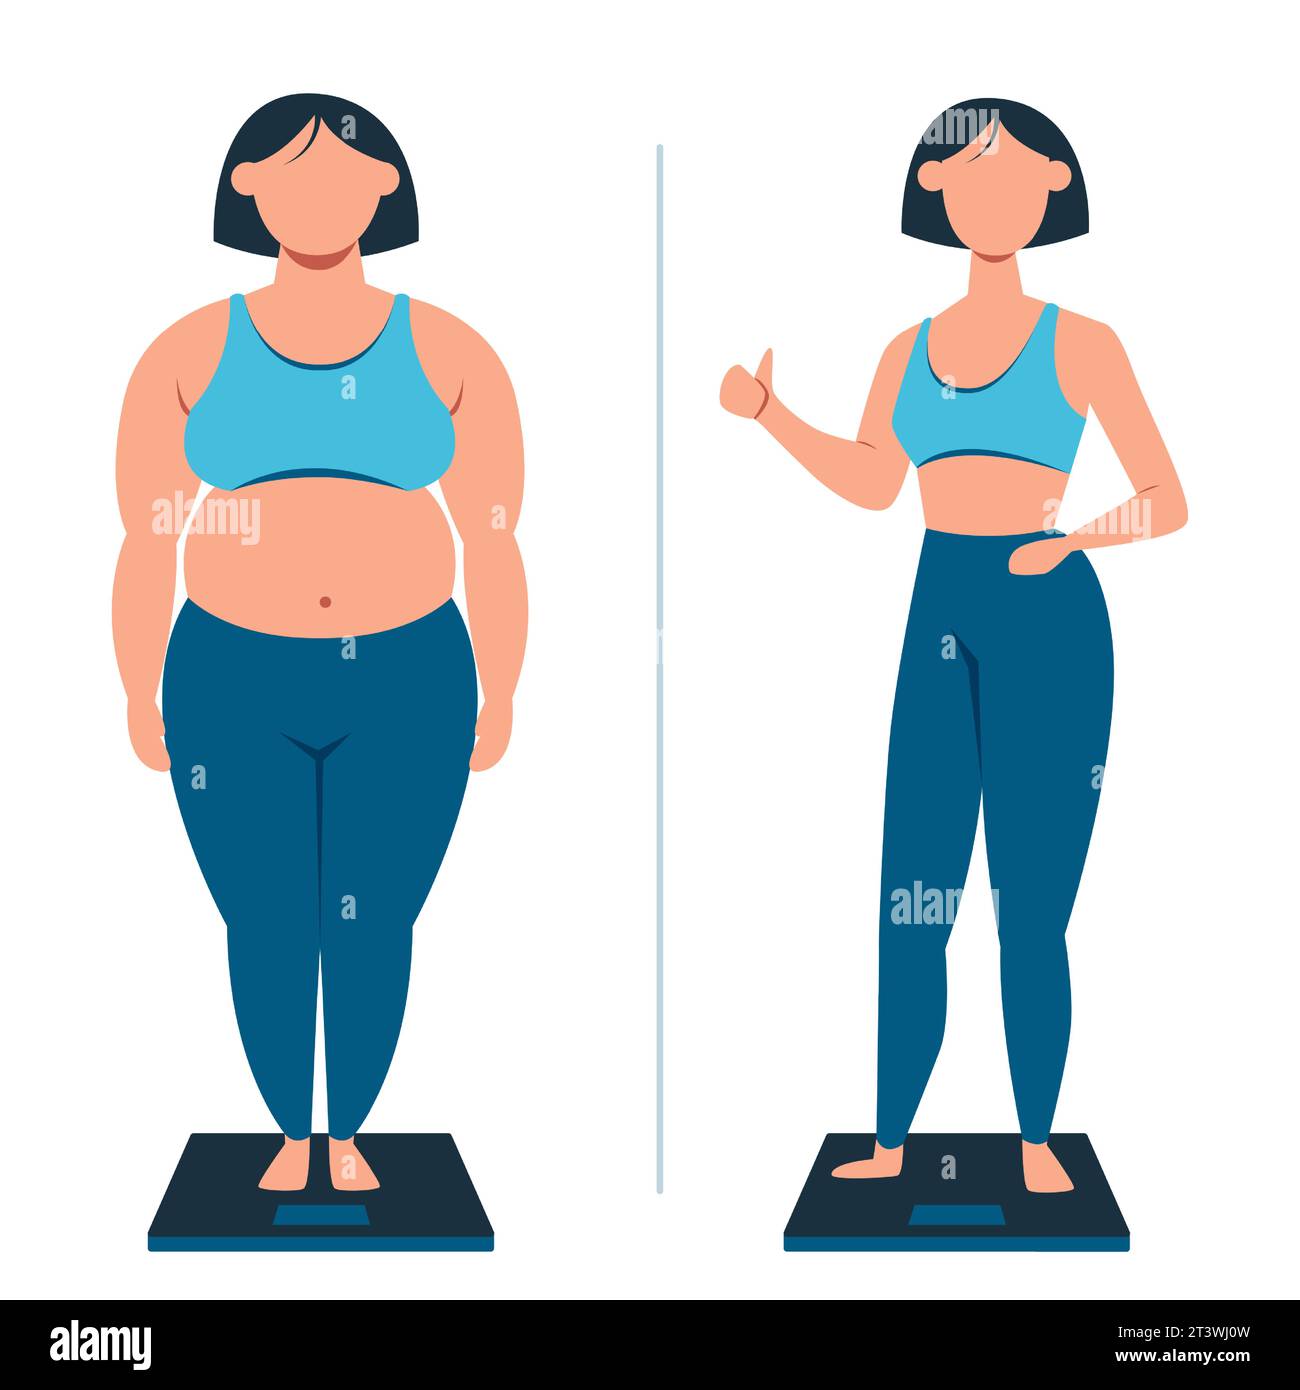 Perte de poids et concept d'exercice. Vecteur d'une jeune femme perdant du poids avec succès Illustration de Vecteur